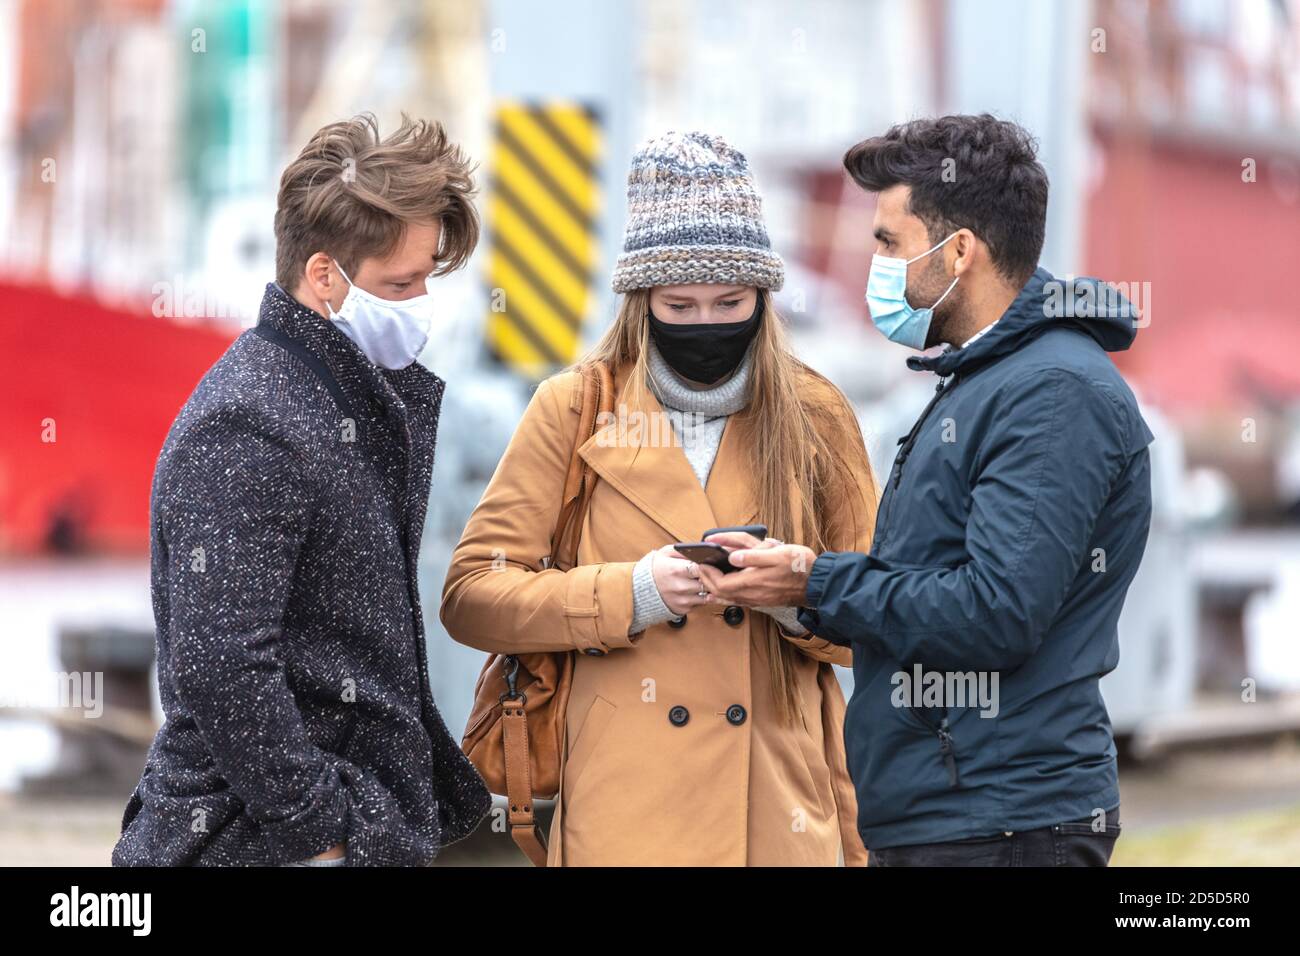 Zwei Männer und eine Frau in Corona-Zeit, mit alltäglichen Masken, in der kalten Jahreszeit in der Stadt unterwegs. Foto de stock